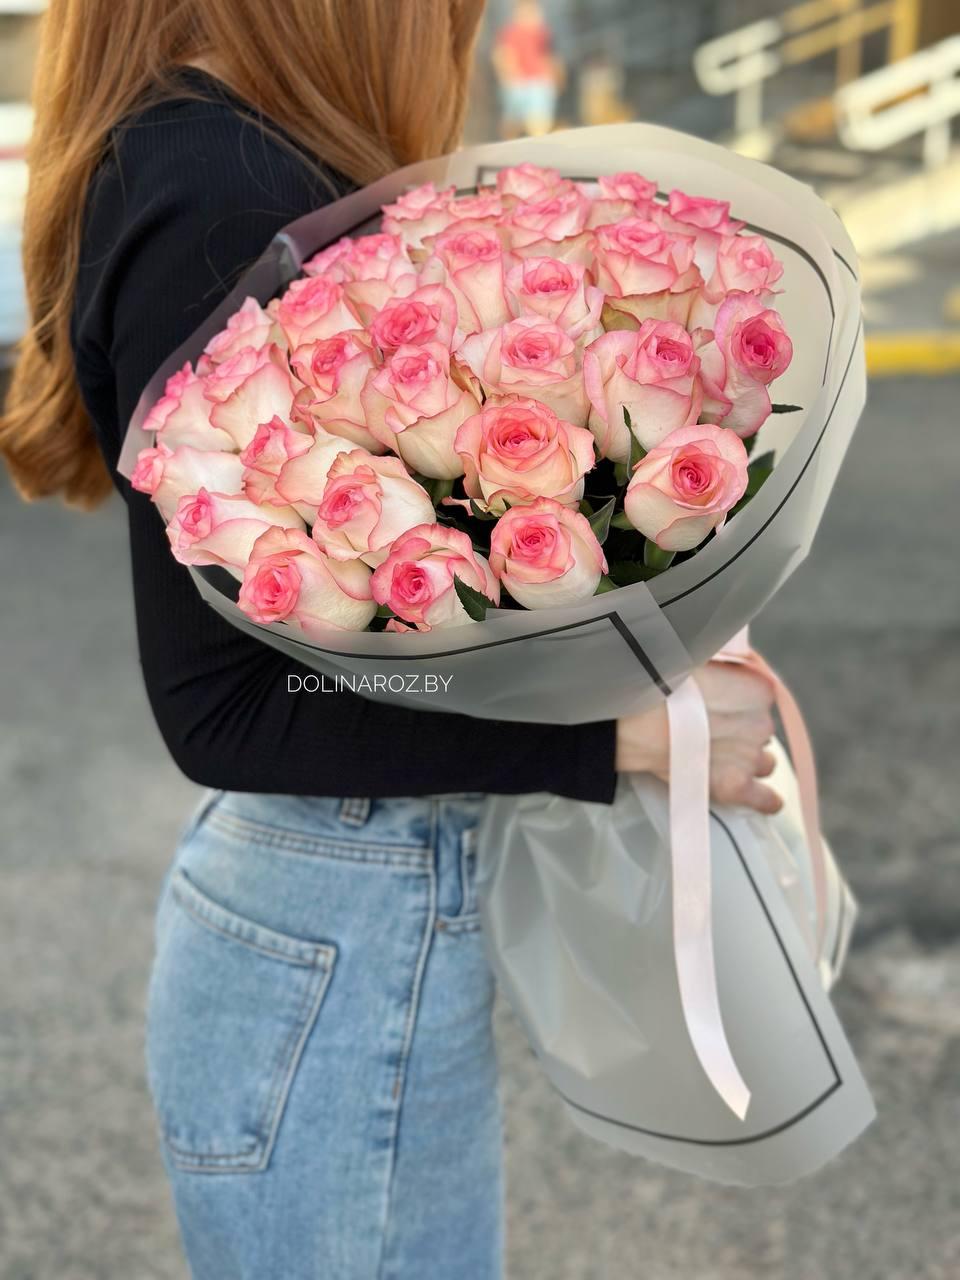  Buy a bouquet of roses sensua